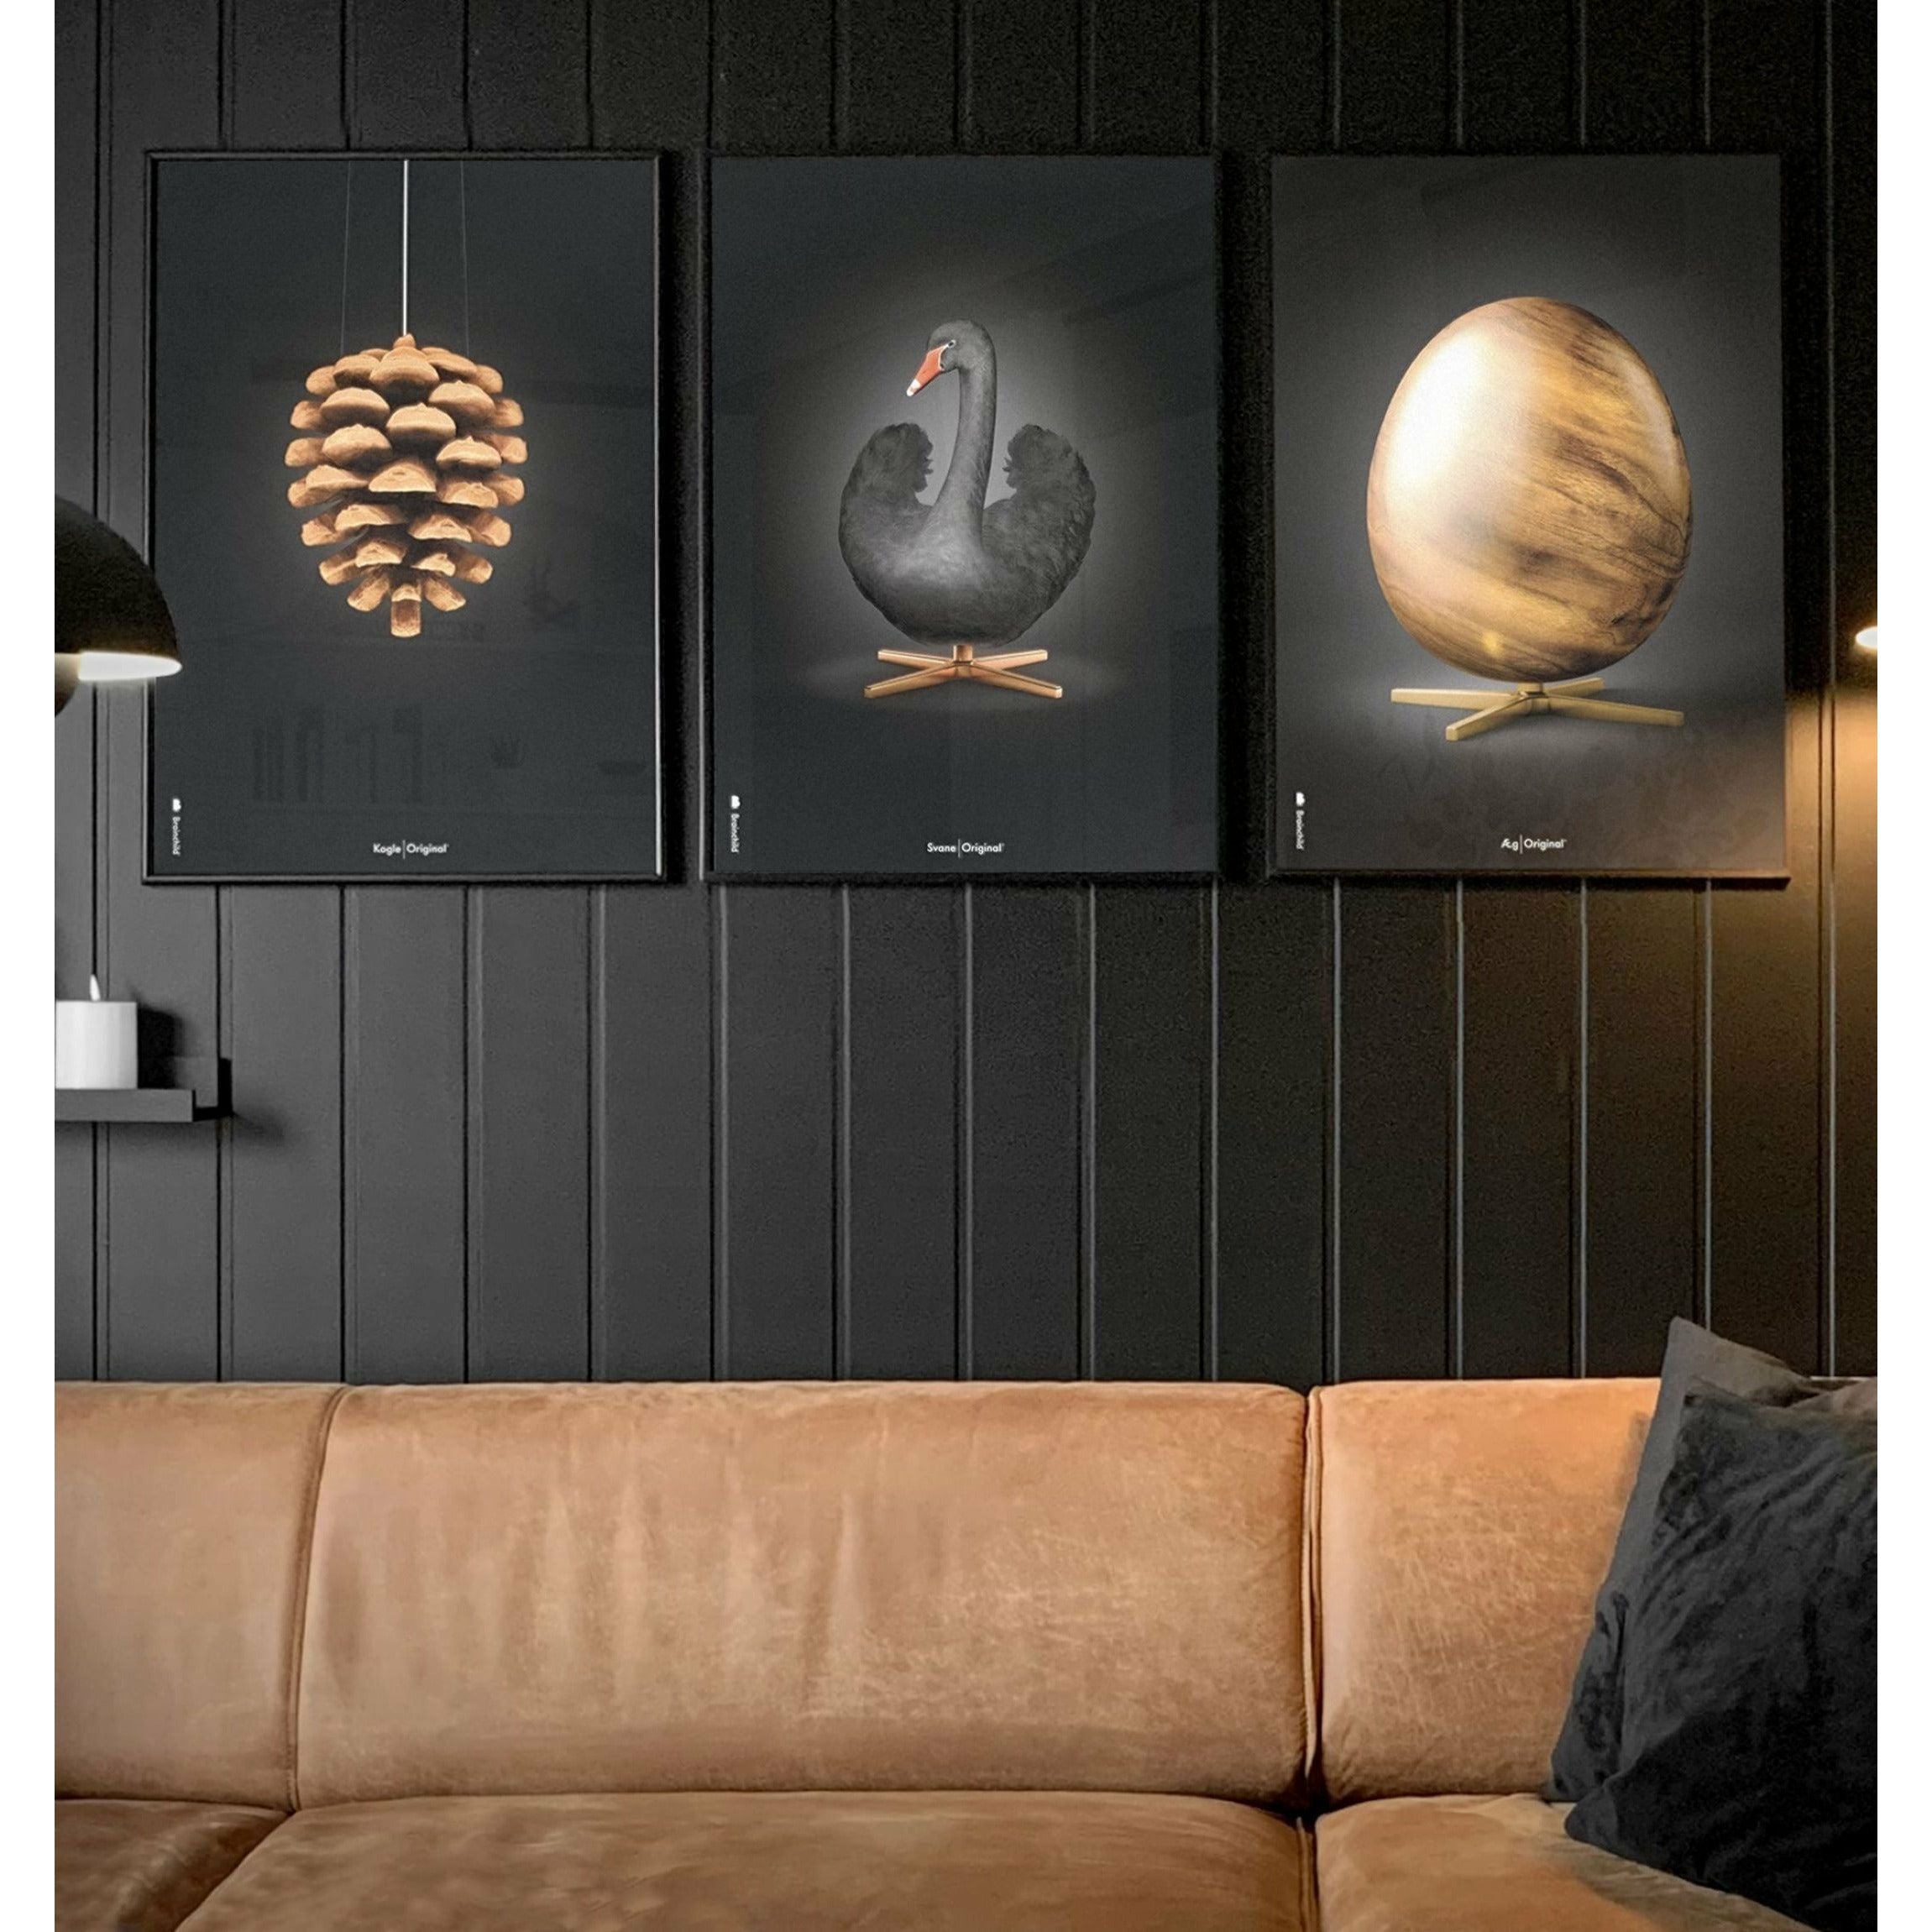 Brainchild Pine Cone Classic Poster, Frame Made of Light Wood 30x40 cm, svart bakgrunn